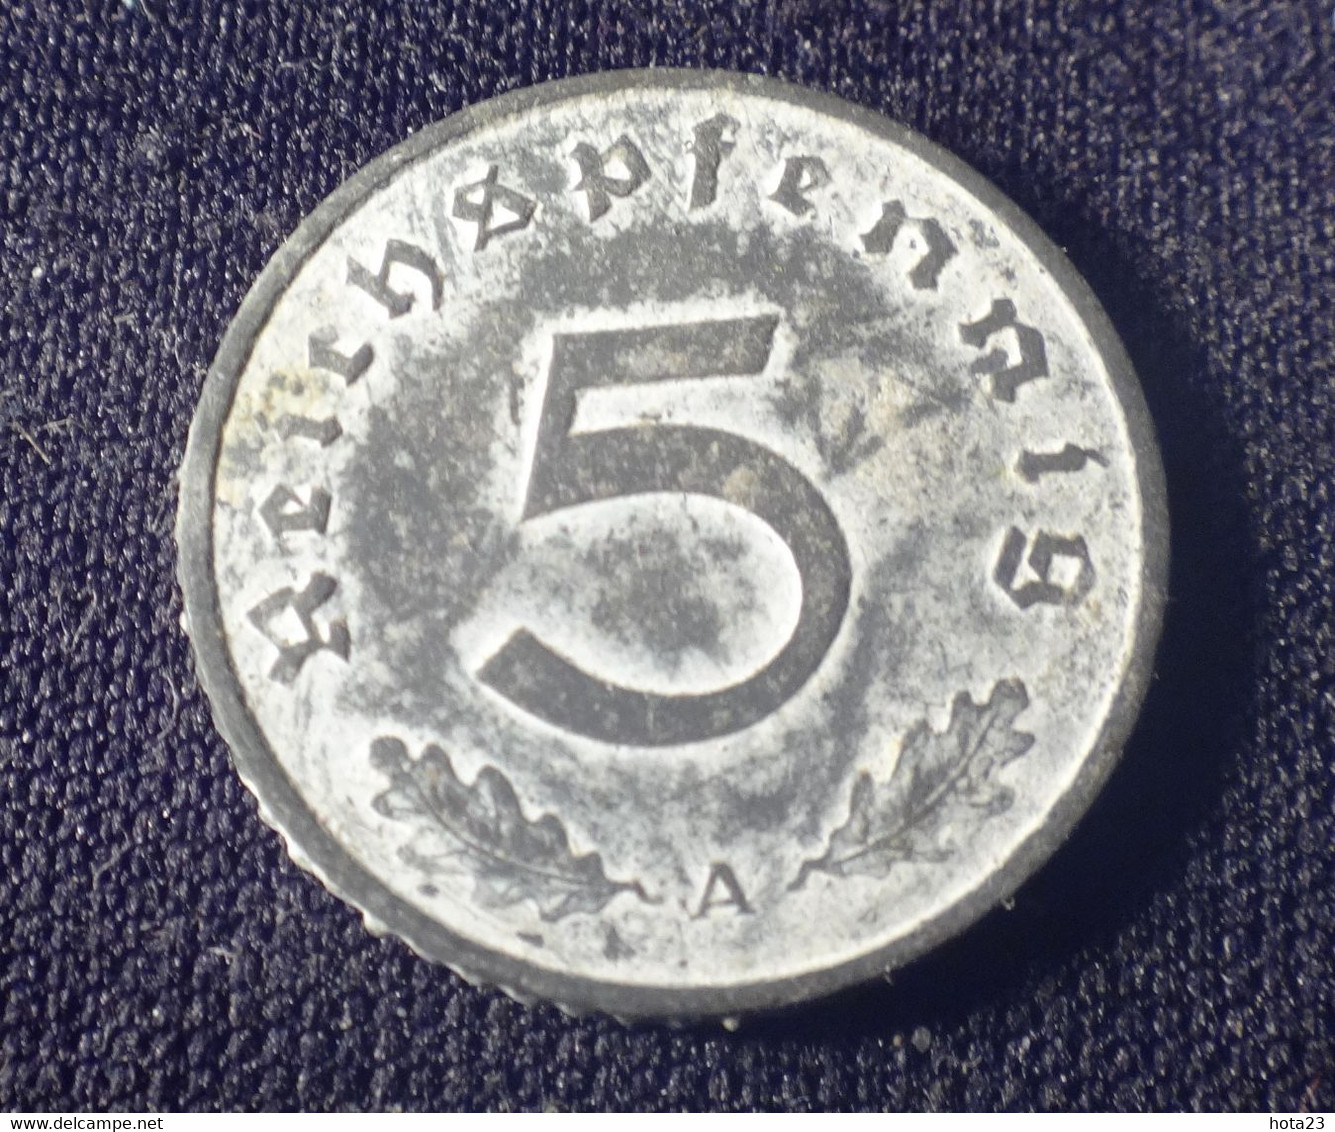 Germany ,ALLEMAGNE : 5 REICHSPFENNIG 1941 A KM 100 - 5 Reichspfennig